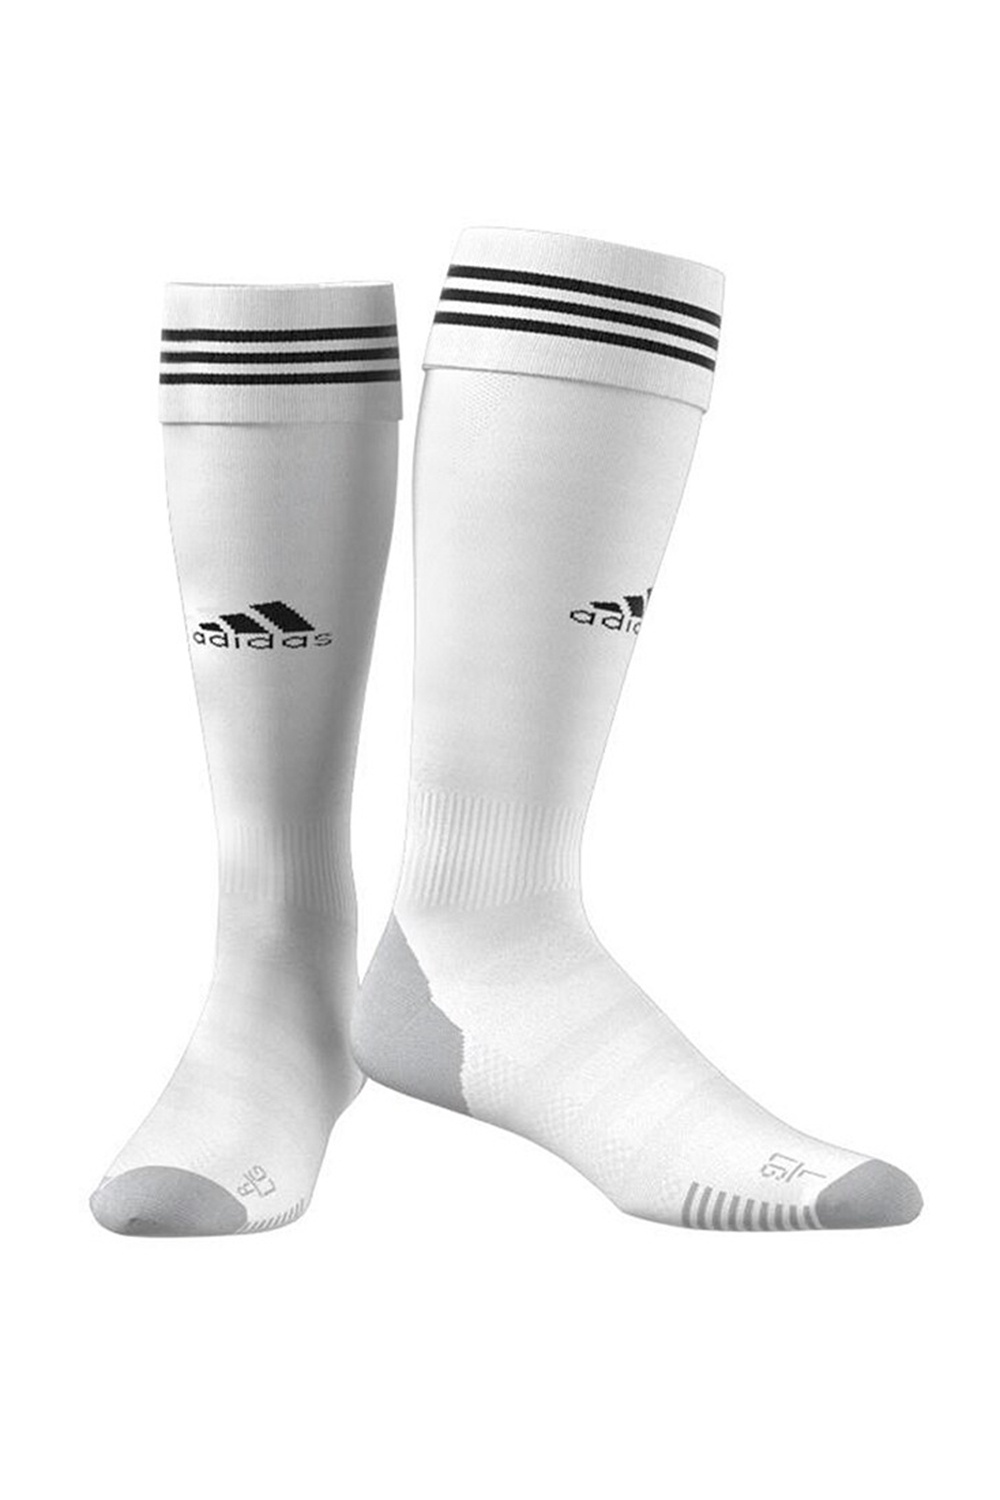 Adidas Socks | Odel.lk